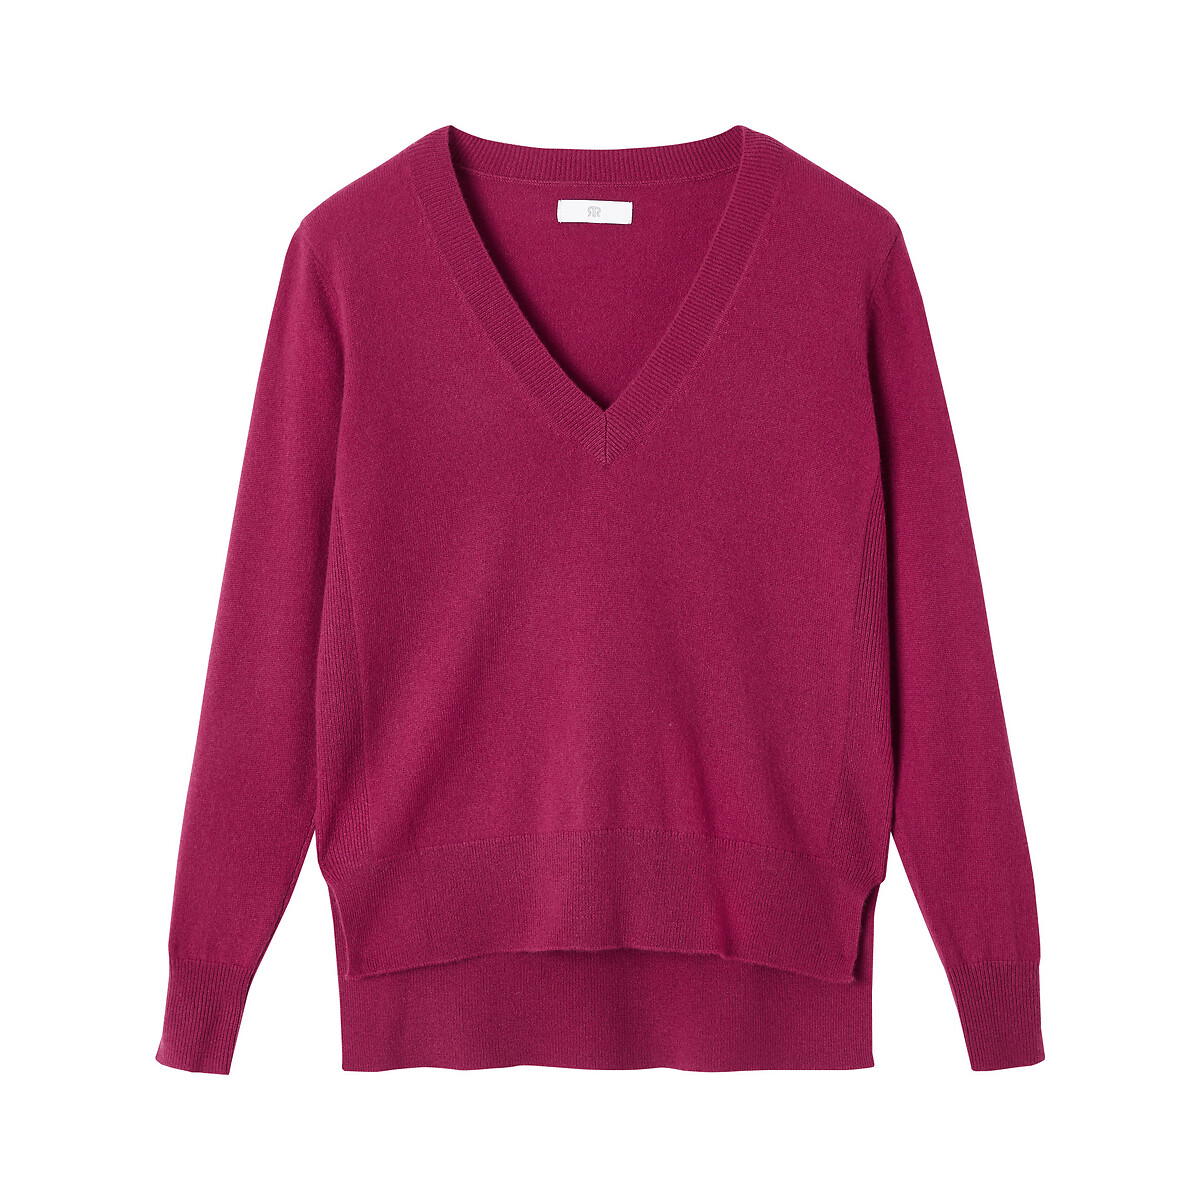 Пуловер La Redoute С V-образным вырезом из кашемира тонкий трикотаж XL красный, размер XL - фото 5